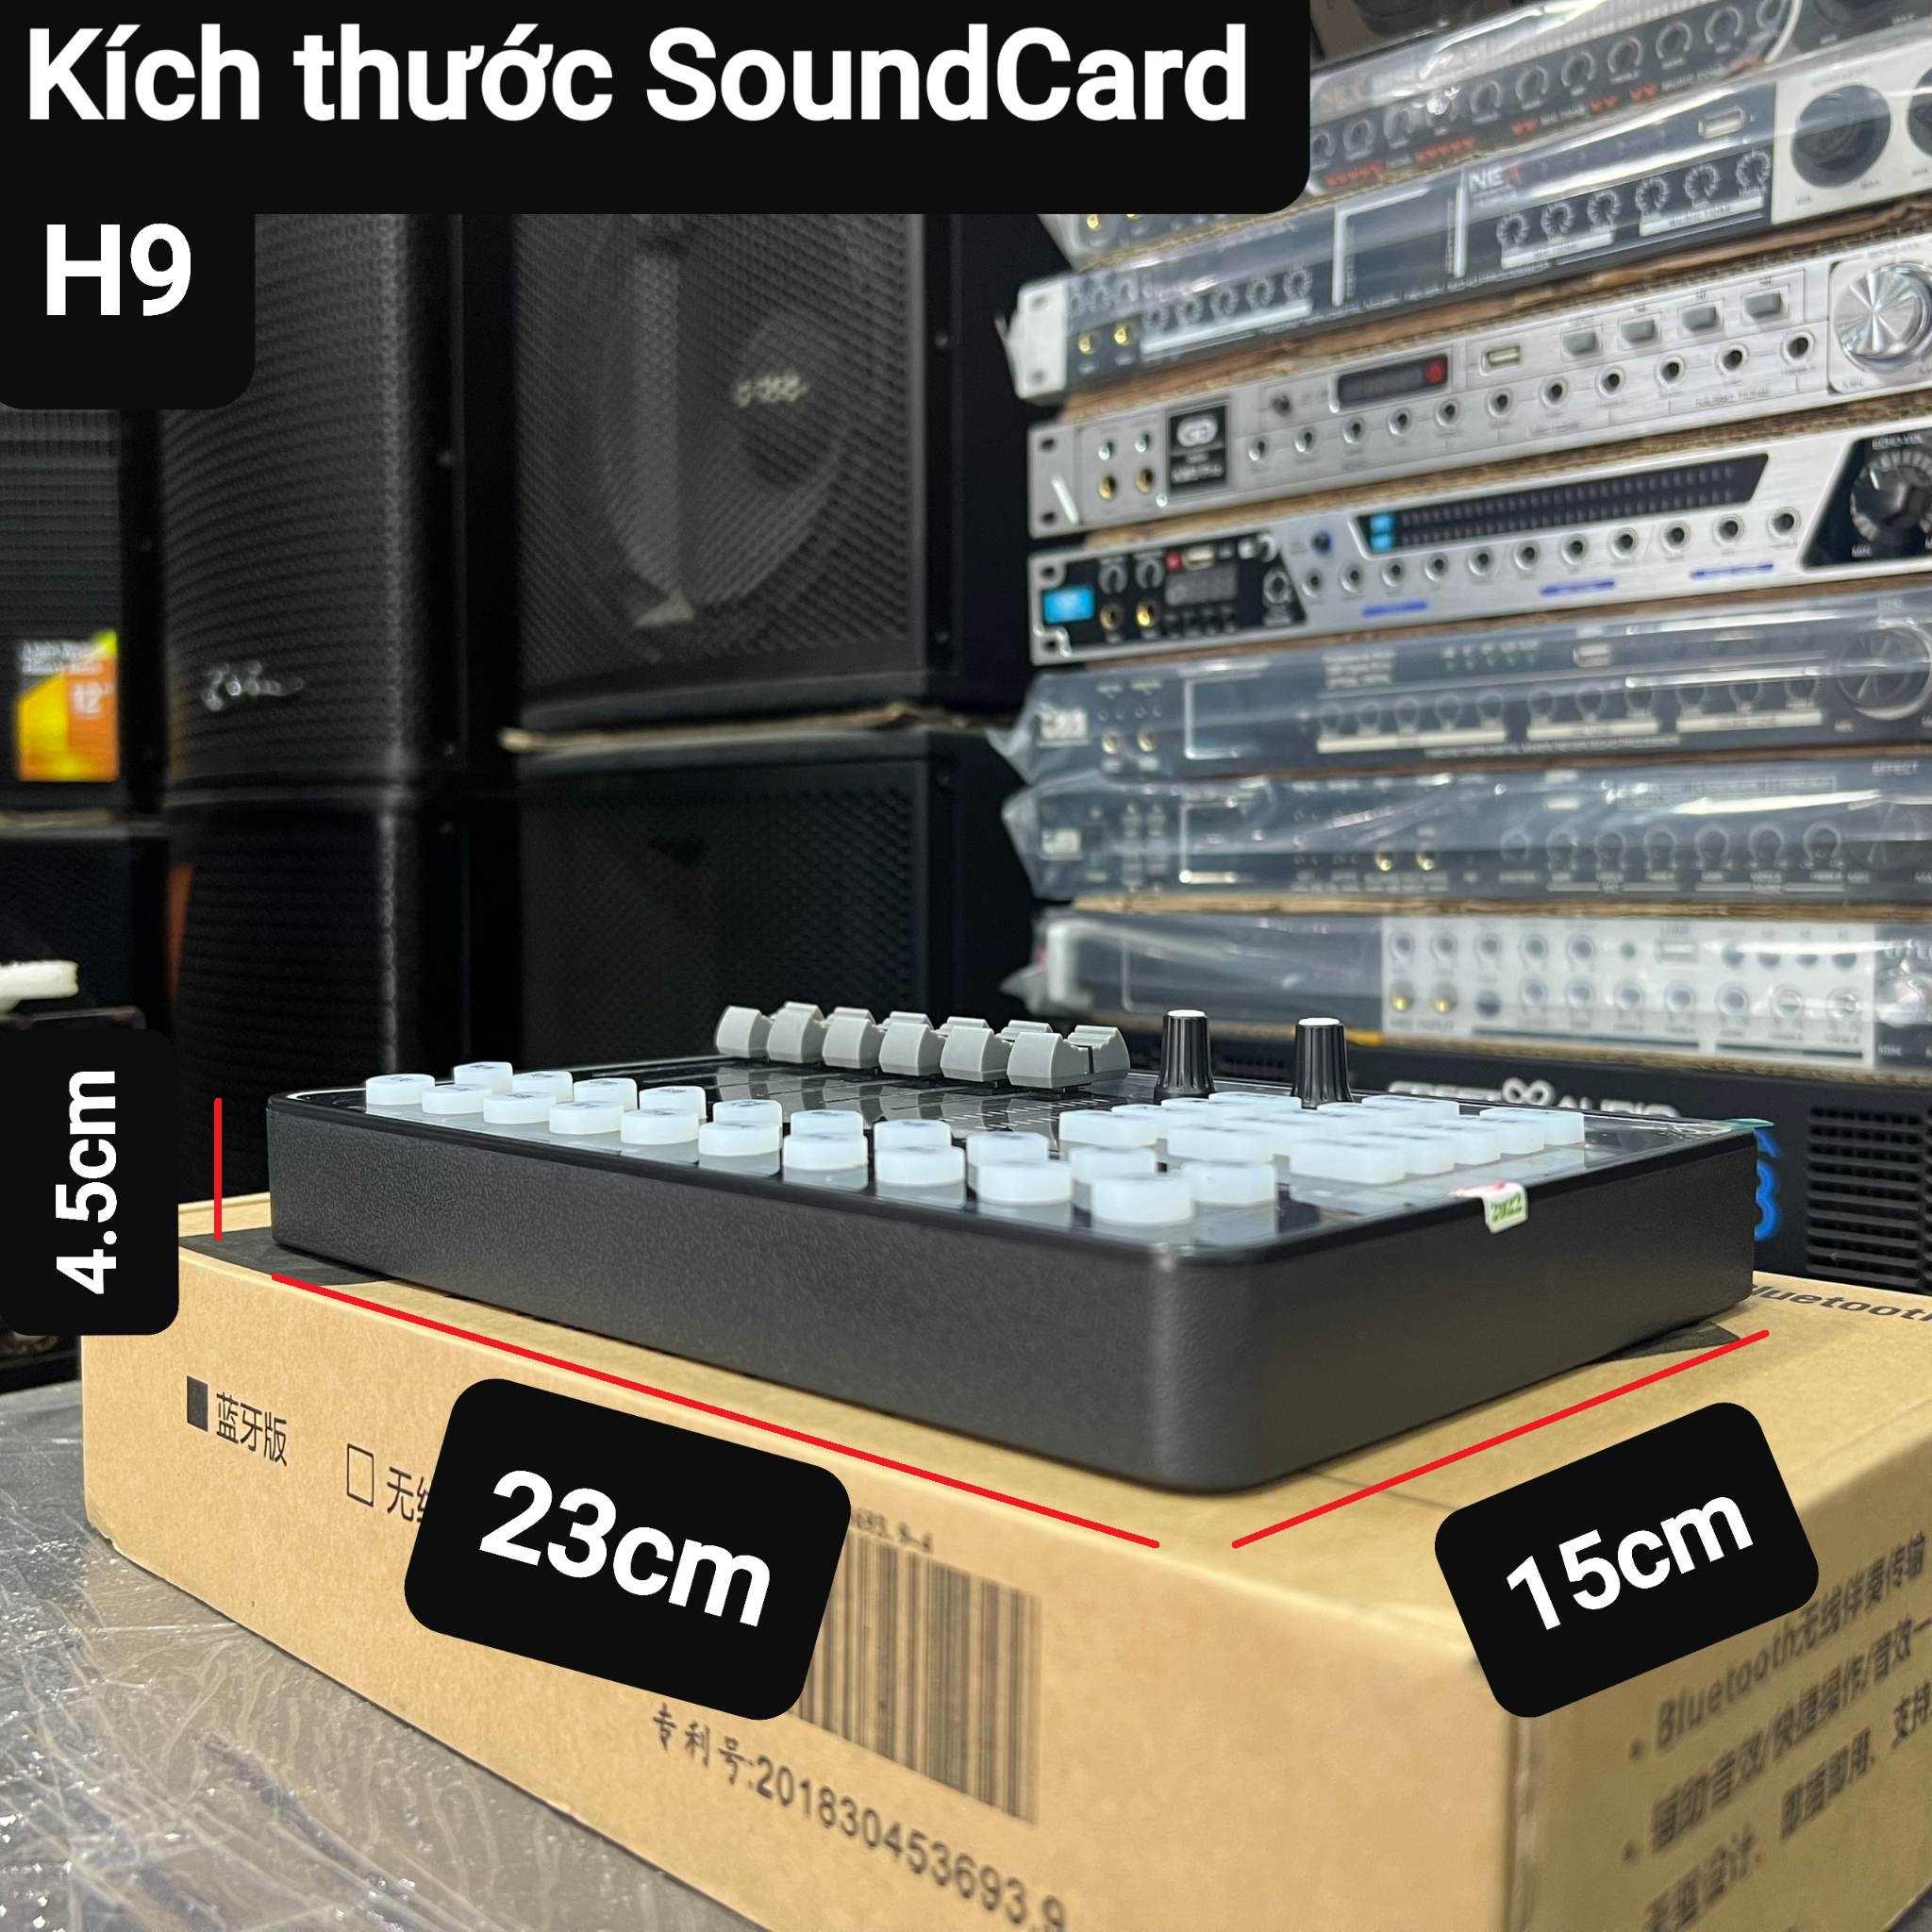 SoundCard H9: Có Bluetooth, Hát thu âm, Livestream đơn giản, dễ sử dụng. Đa dạng chức năng hiệu ứng hỗ trợ giọng hát